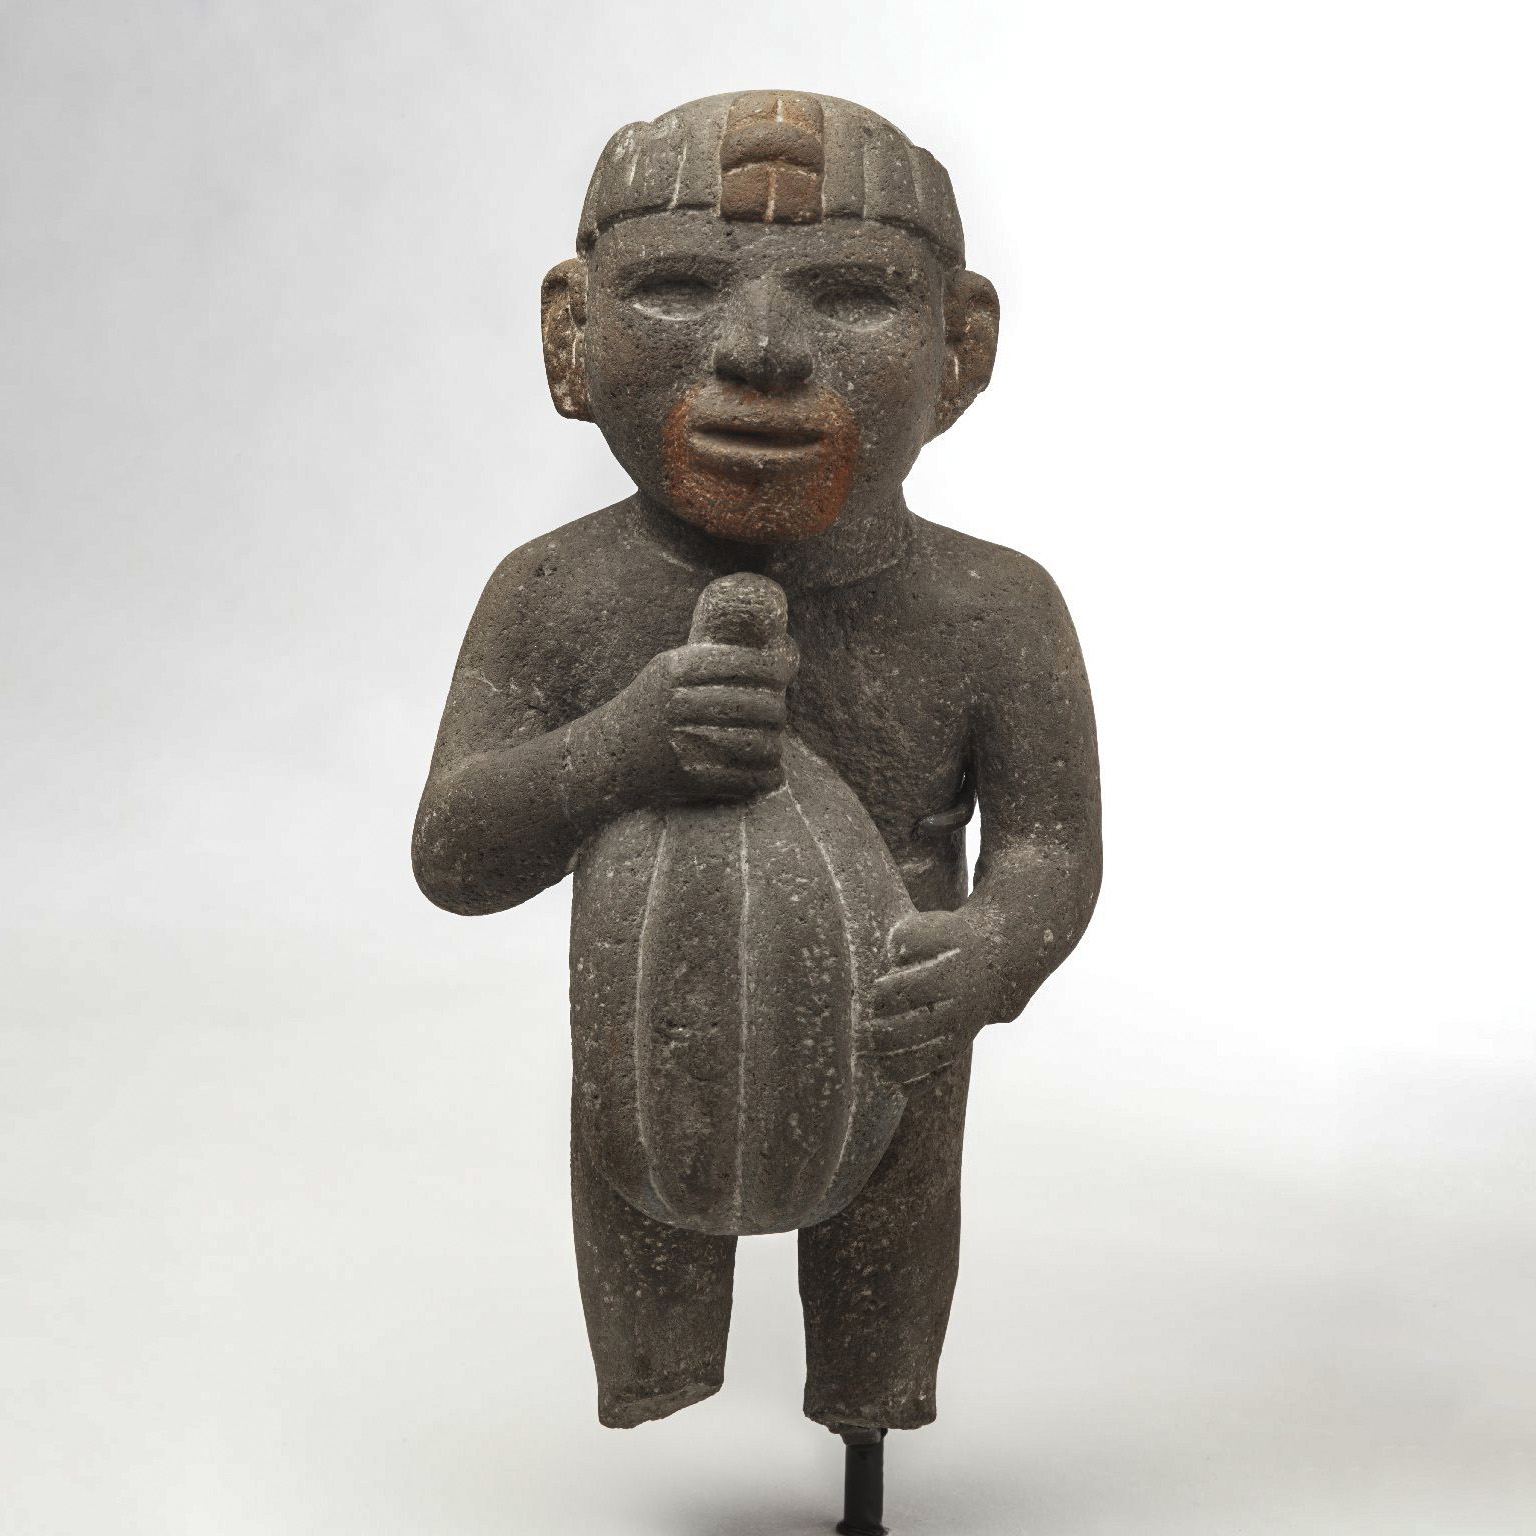 Скульптура, изображающая мужчину с плодом какао в руках. Ацтеки, 1440-1521 гг. н.э. Коллекция Brooklyn Museum.